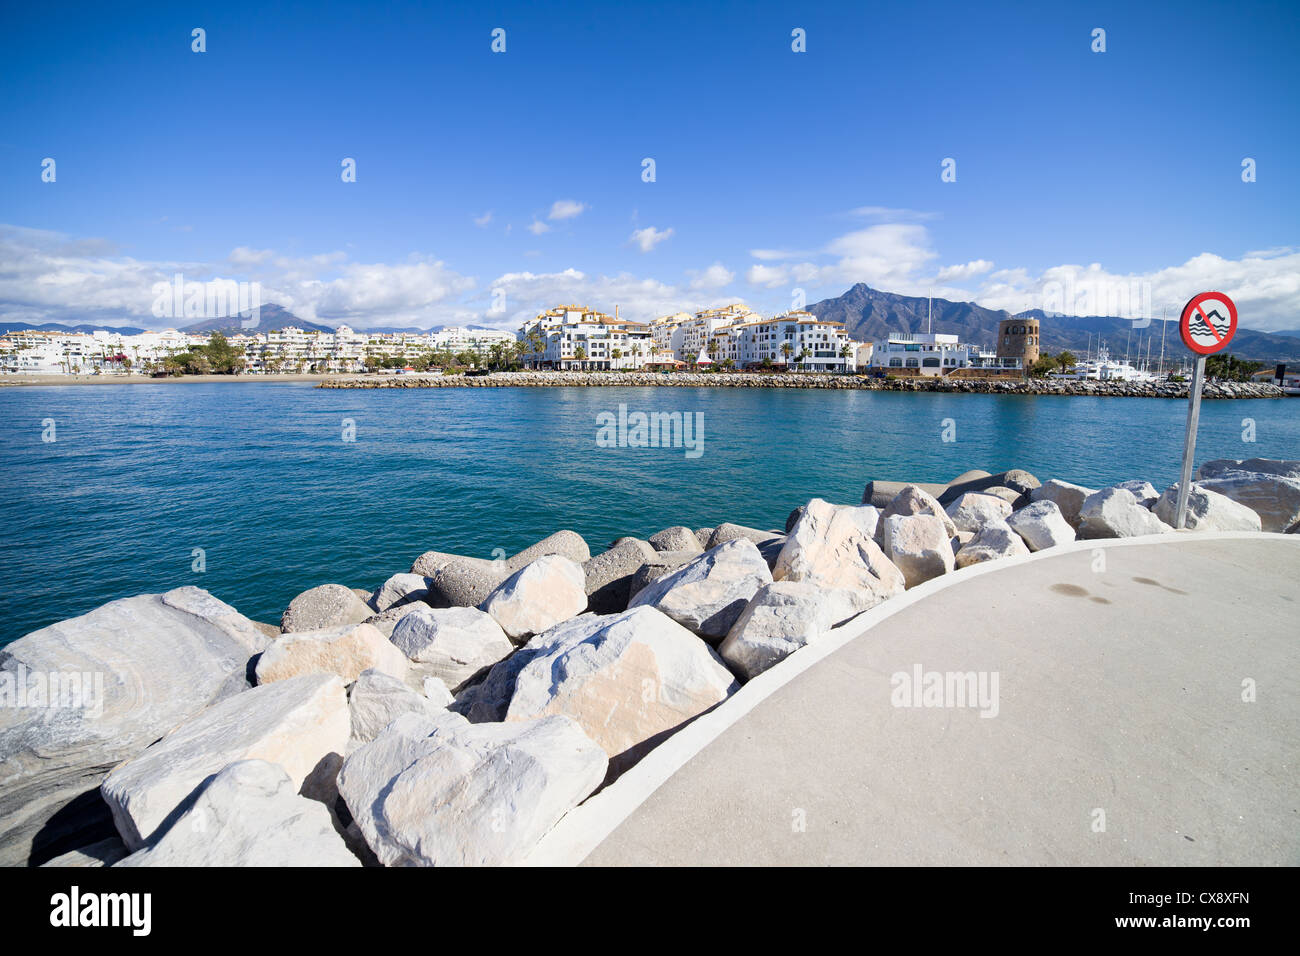 Ingresso al porto turistico di Puerto Banus vicino a Marbella sulla Costa del Sol, Andalusia, Spagna meridionale. Foto Stock